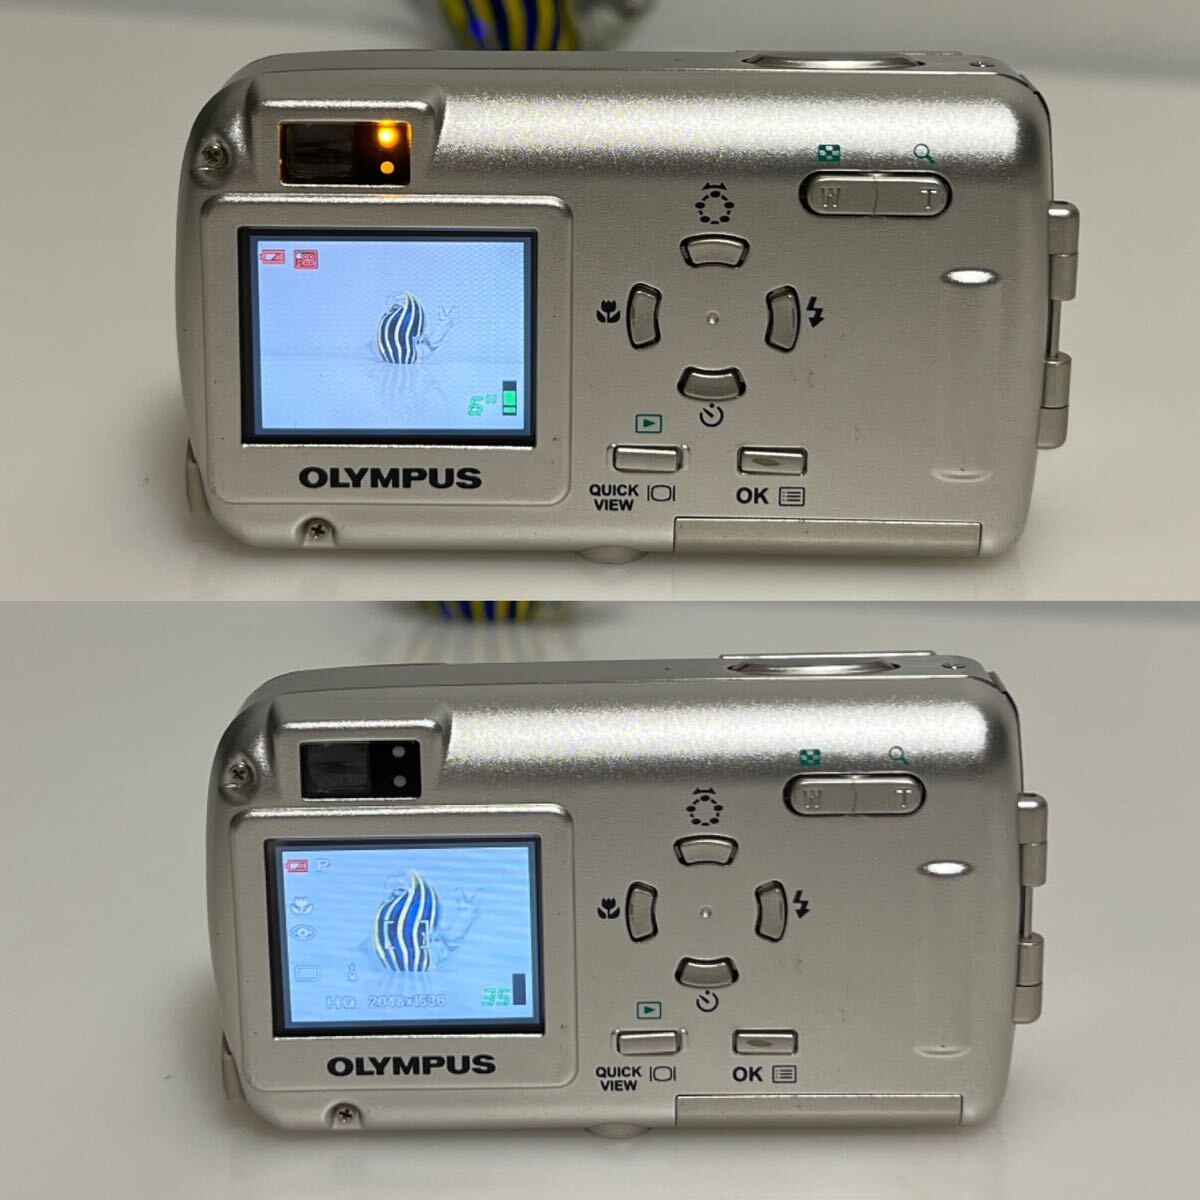 OLYMPUS компактный цифровой фотоаппарат u-10 digital